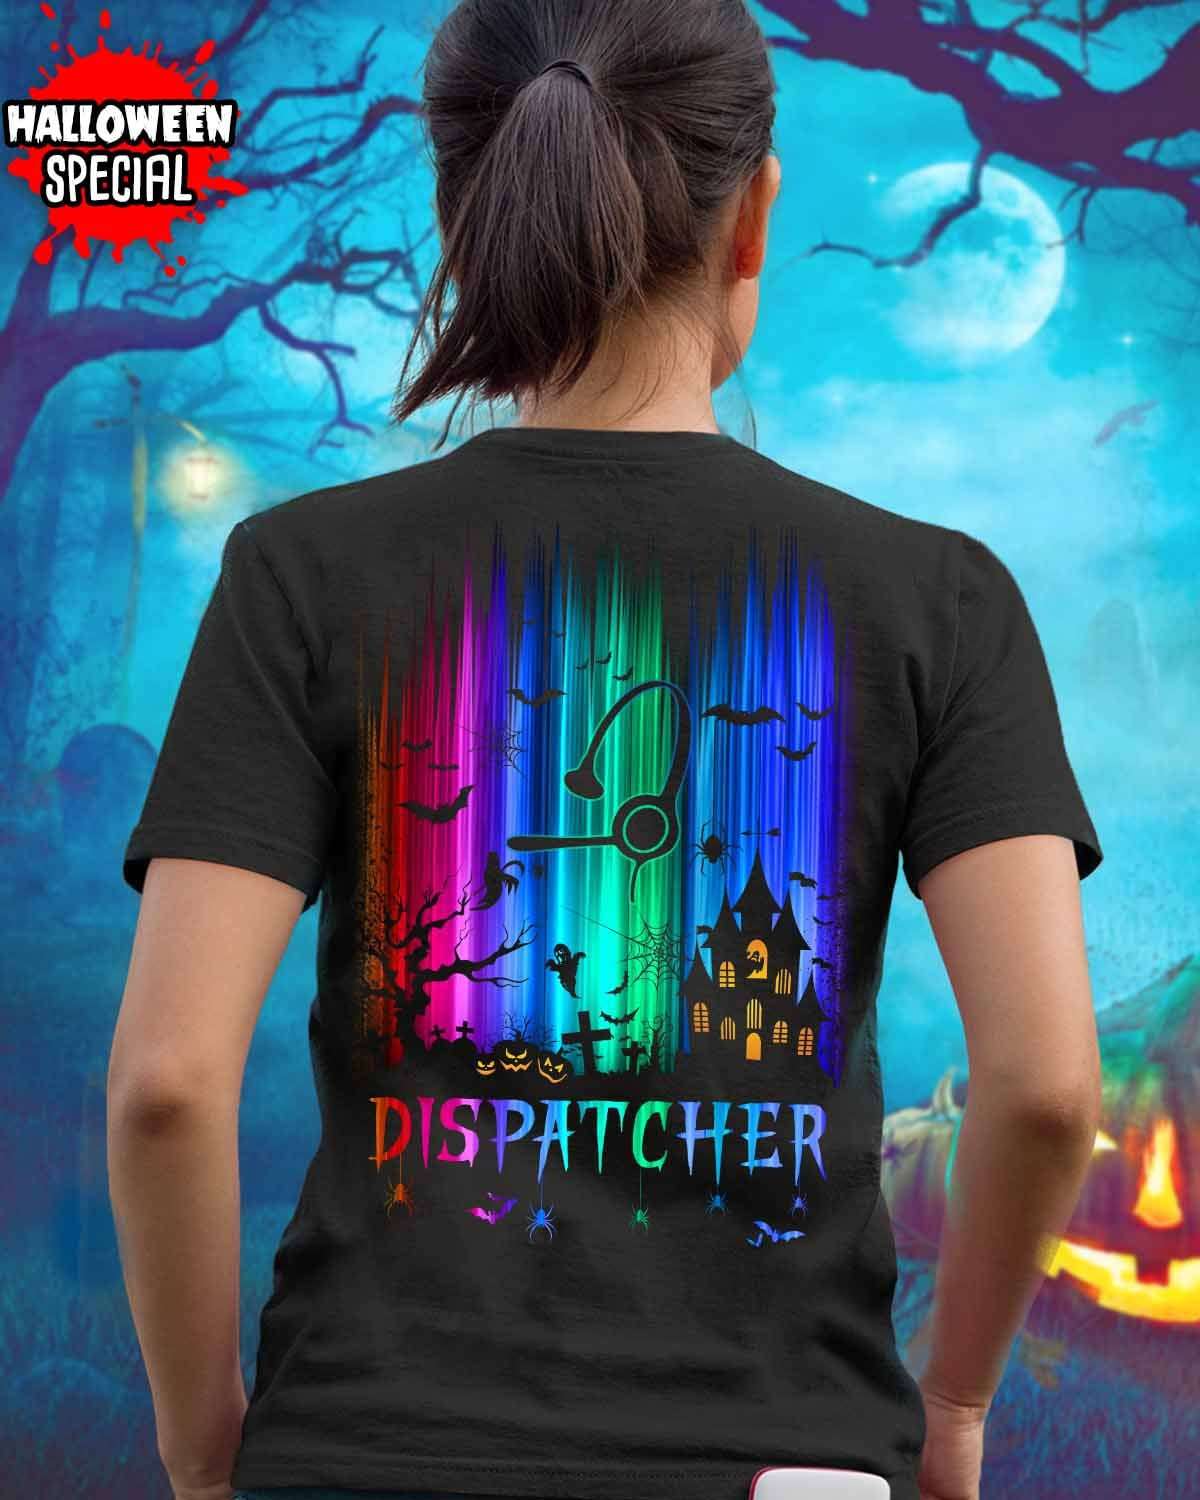 Dispatcher Halloween Night, Halloween Costume - Dispatcher The Job